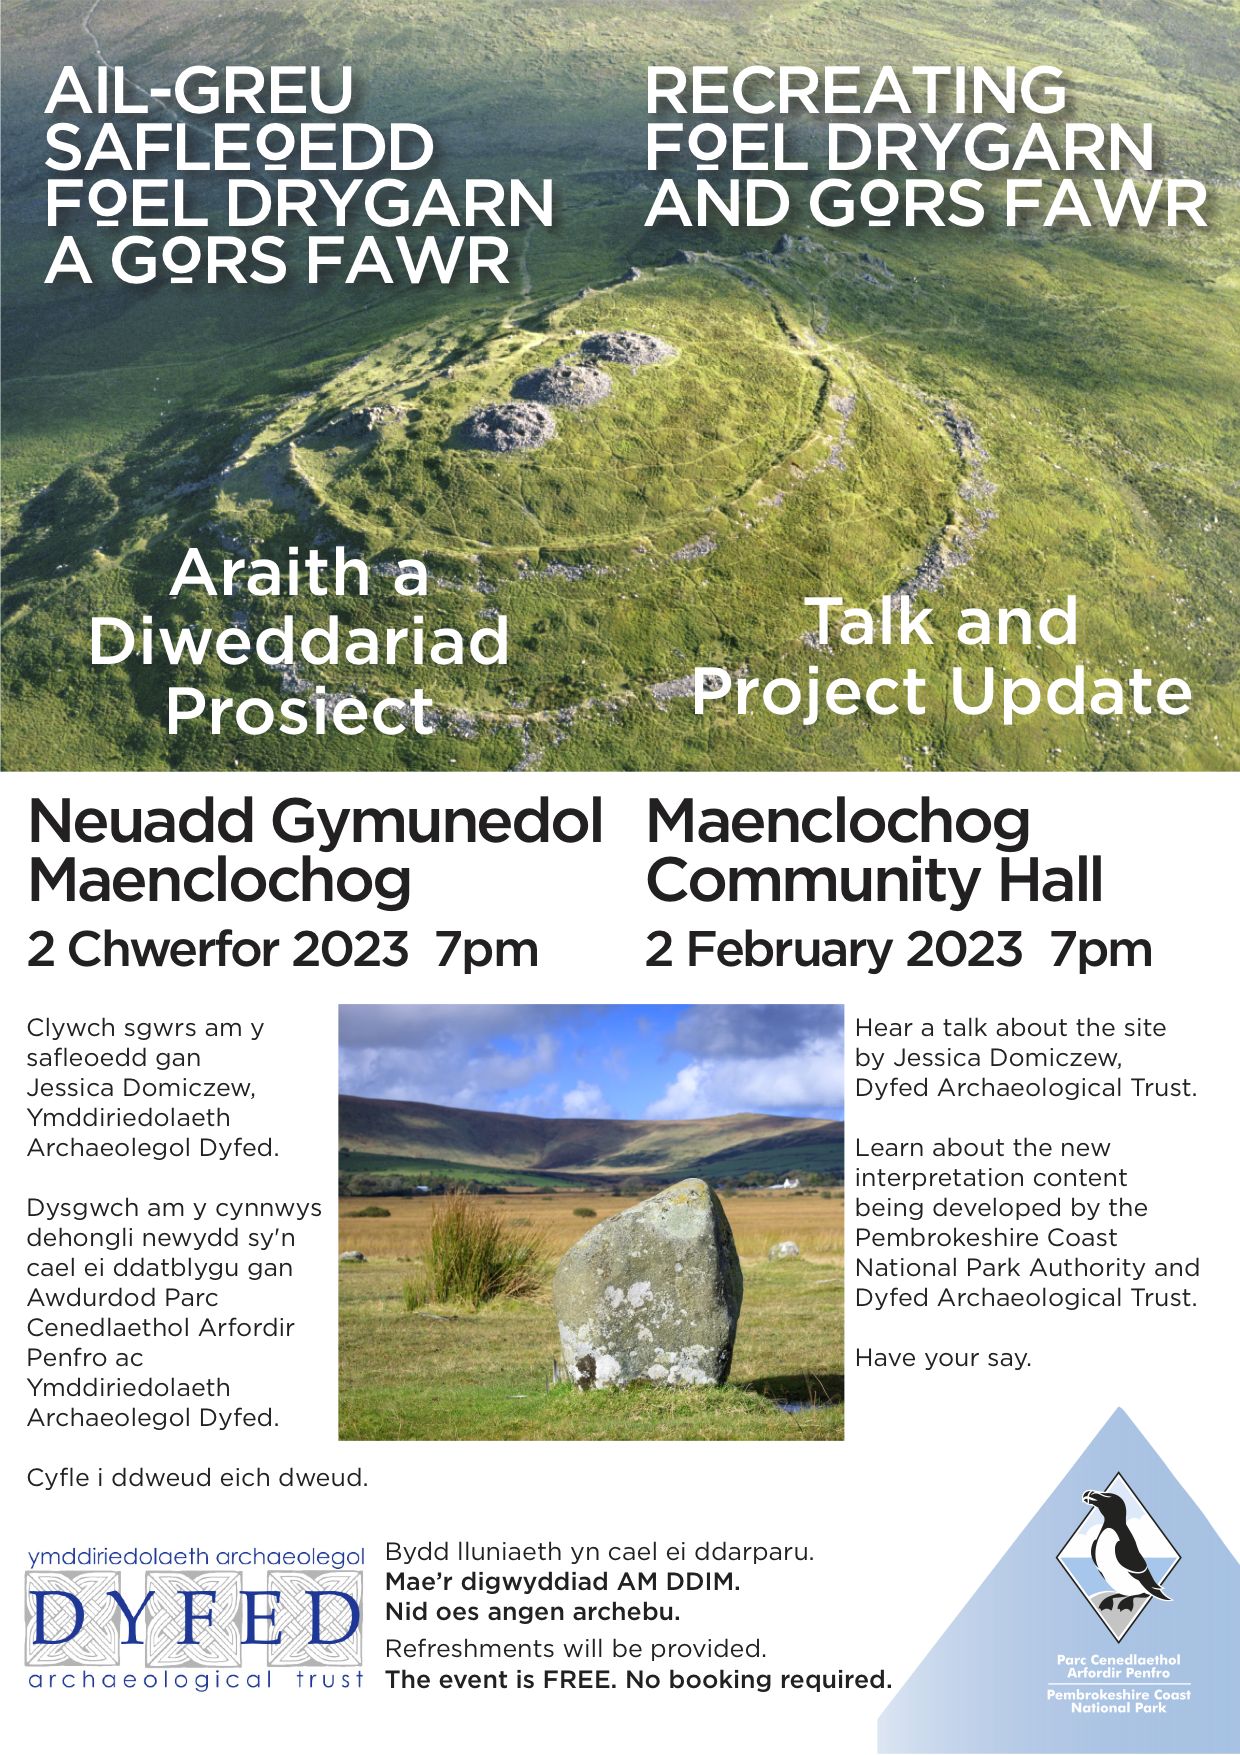 Information on Foel Draygarn workshop in Wales